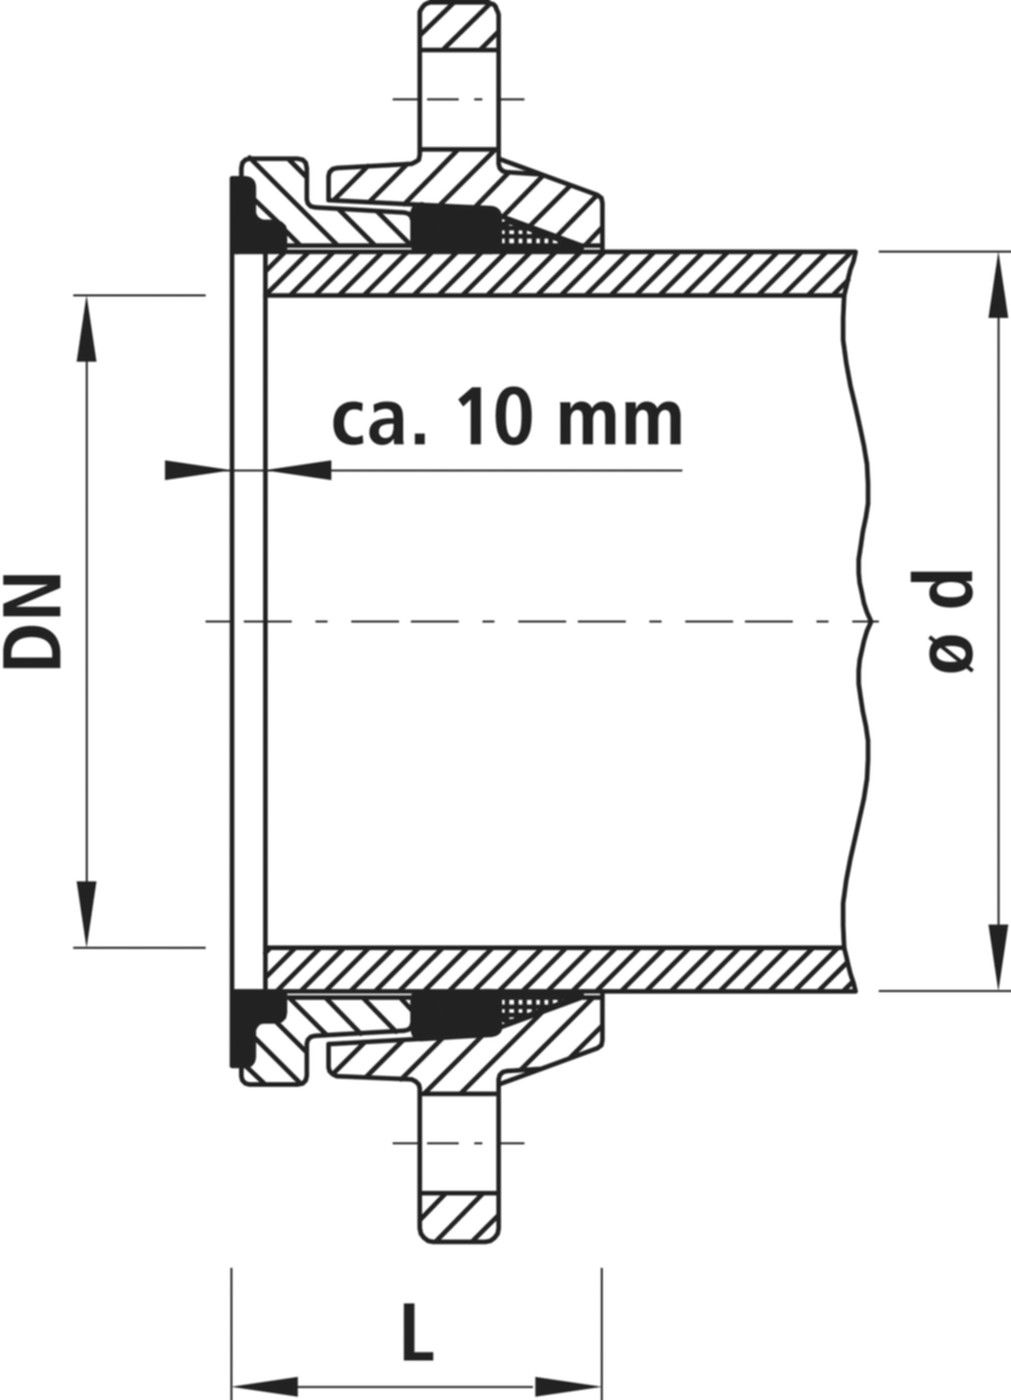 Zweikammer-Flansch für Stahlrohre 7150 schubsicher, PN 10/16 DN 125 / AD 133mm - Hawle Flanschformstücke